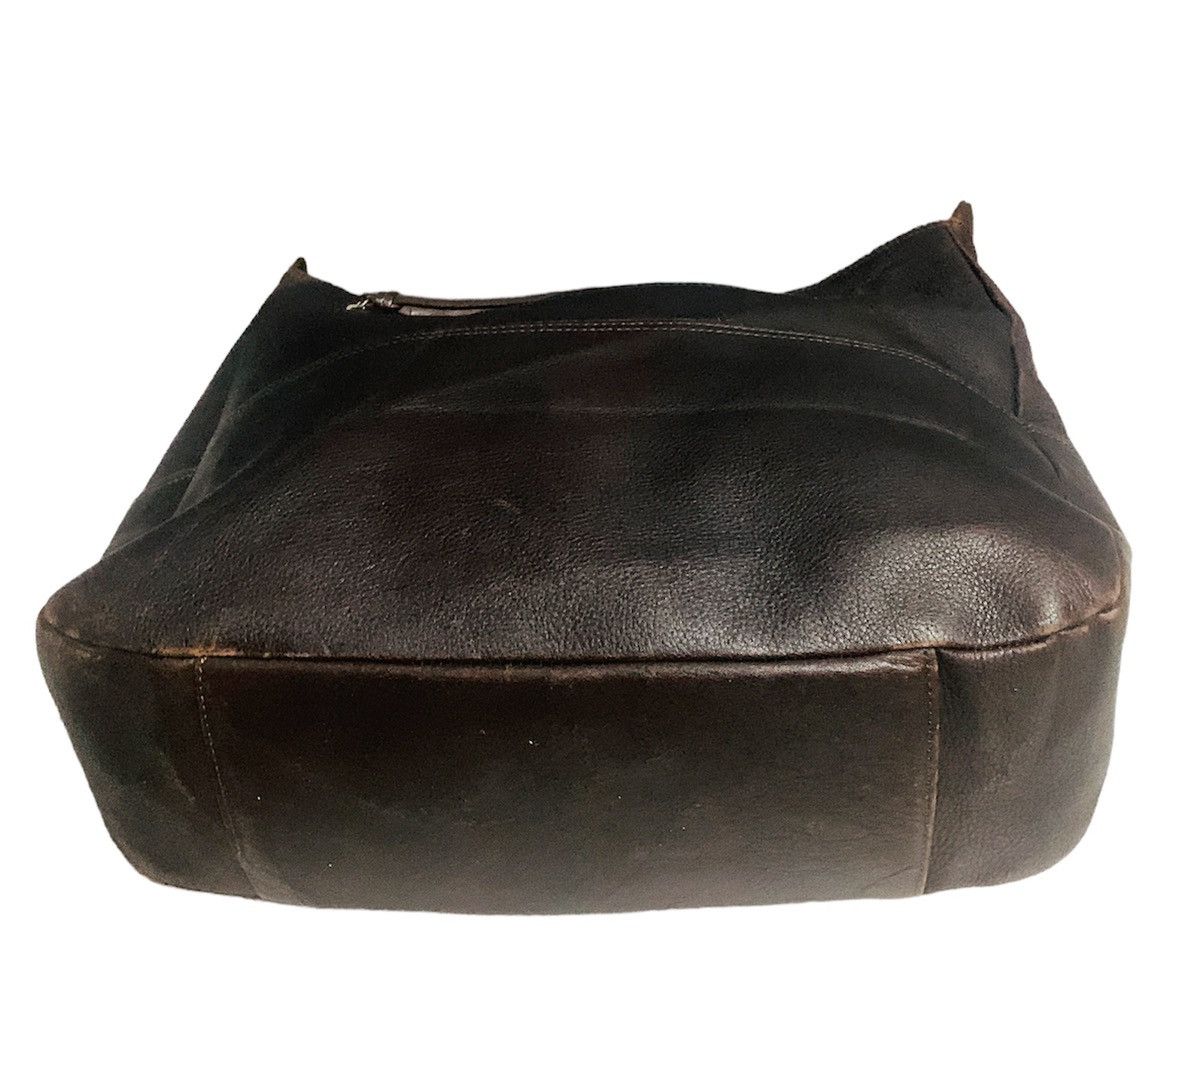 Margaret Howell Margaret Howell brown leather sling/shoulder bag Size ONE SIZE - 7 Thumbnail